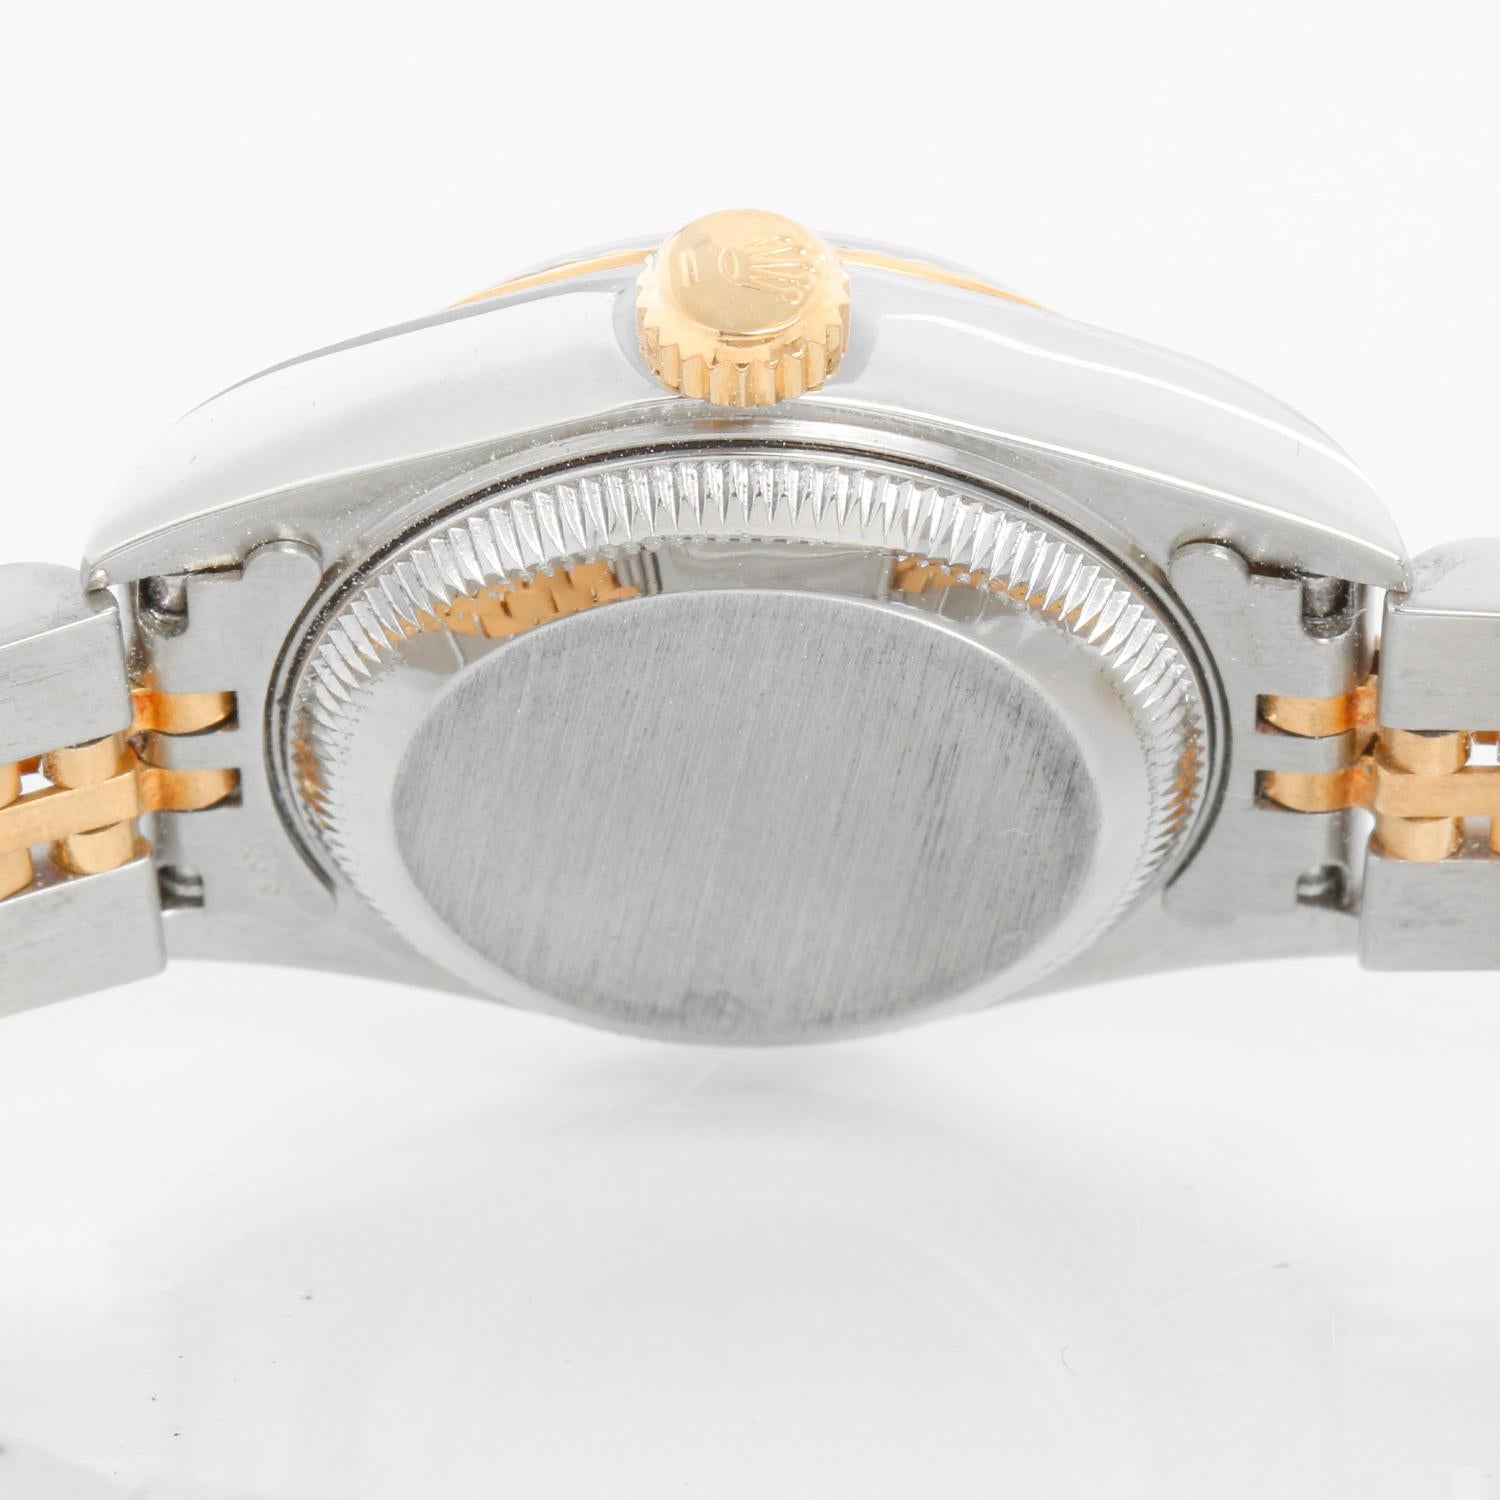 Rolex Ladies Datejust Steel & Gold Watch 69173 3